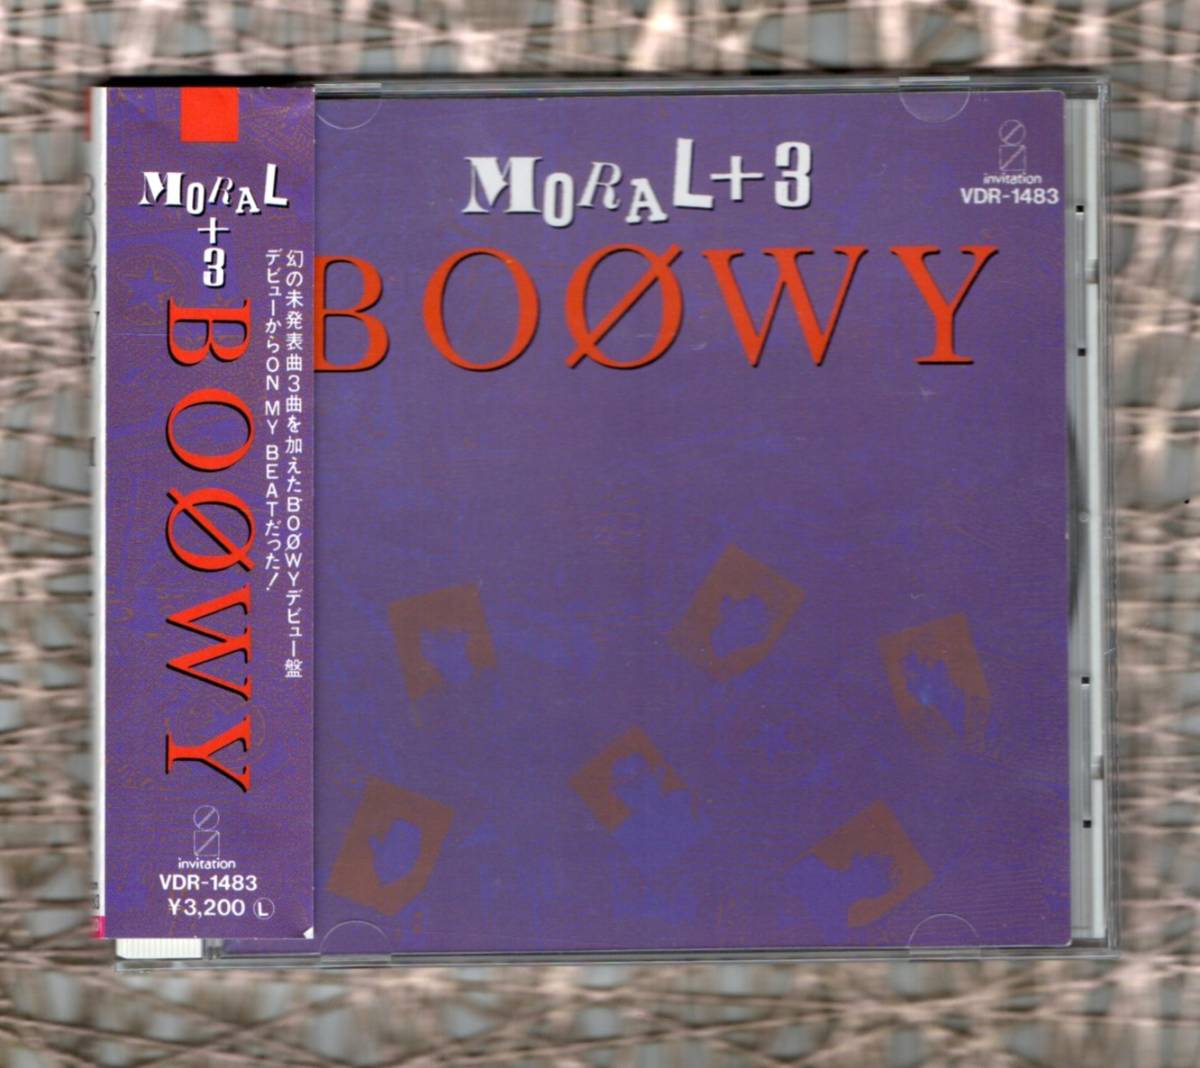 Ω 帯付 美盤 ボウイ BOOWY 16曲入 デビューアルバム モラル + 3 CD/MORAL/OUT DAKARA LET'S THINK/暴威 ボーイ BOφWY 氷室京介 布袋寅泰_※プラケースは交換済みです。